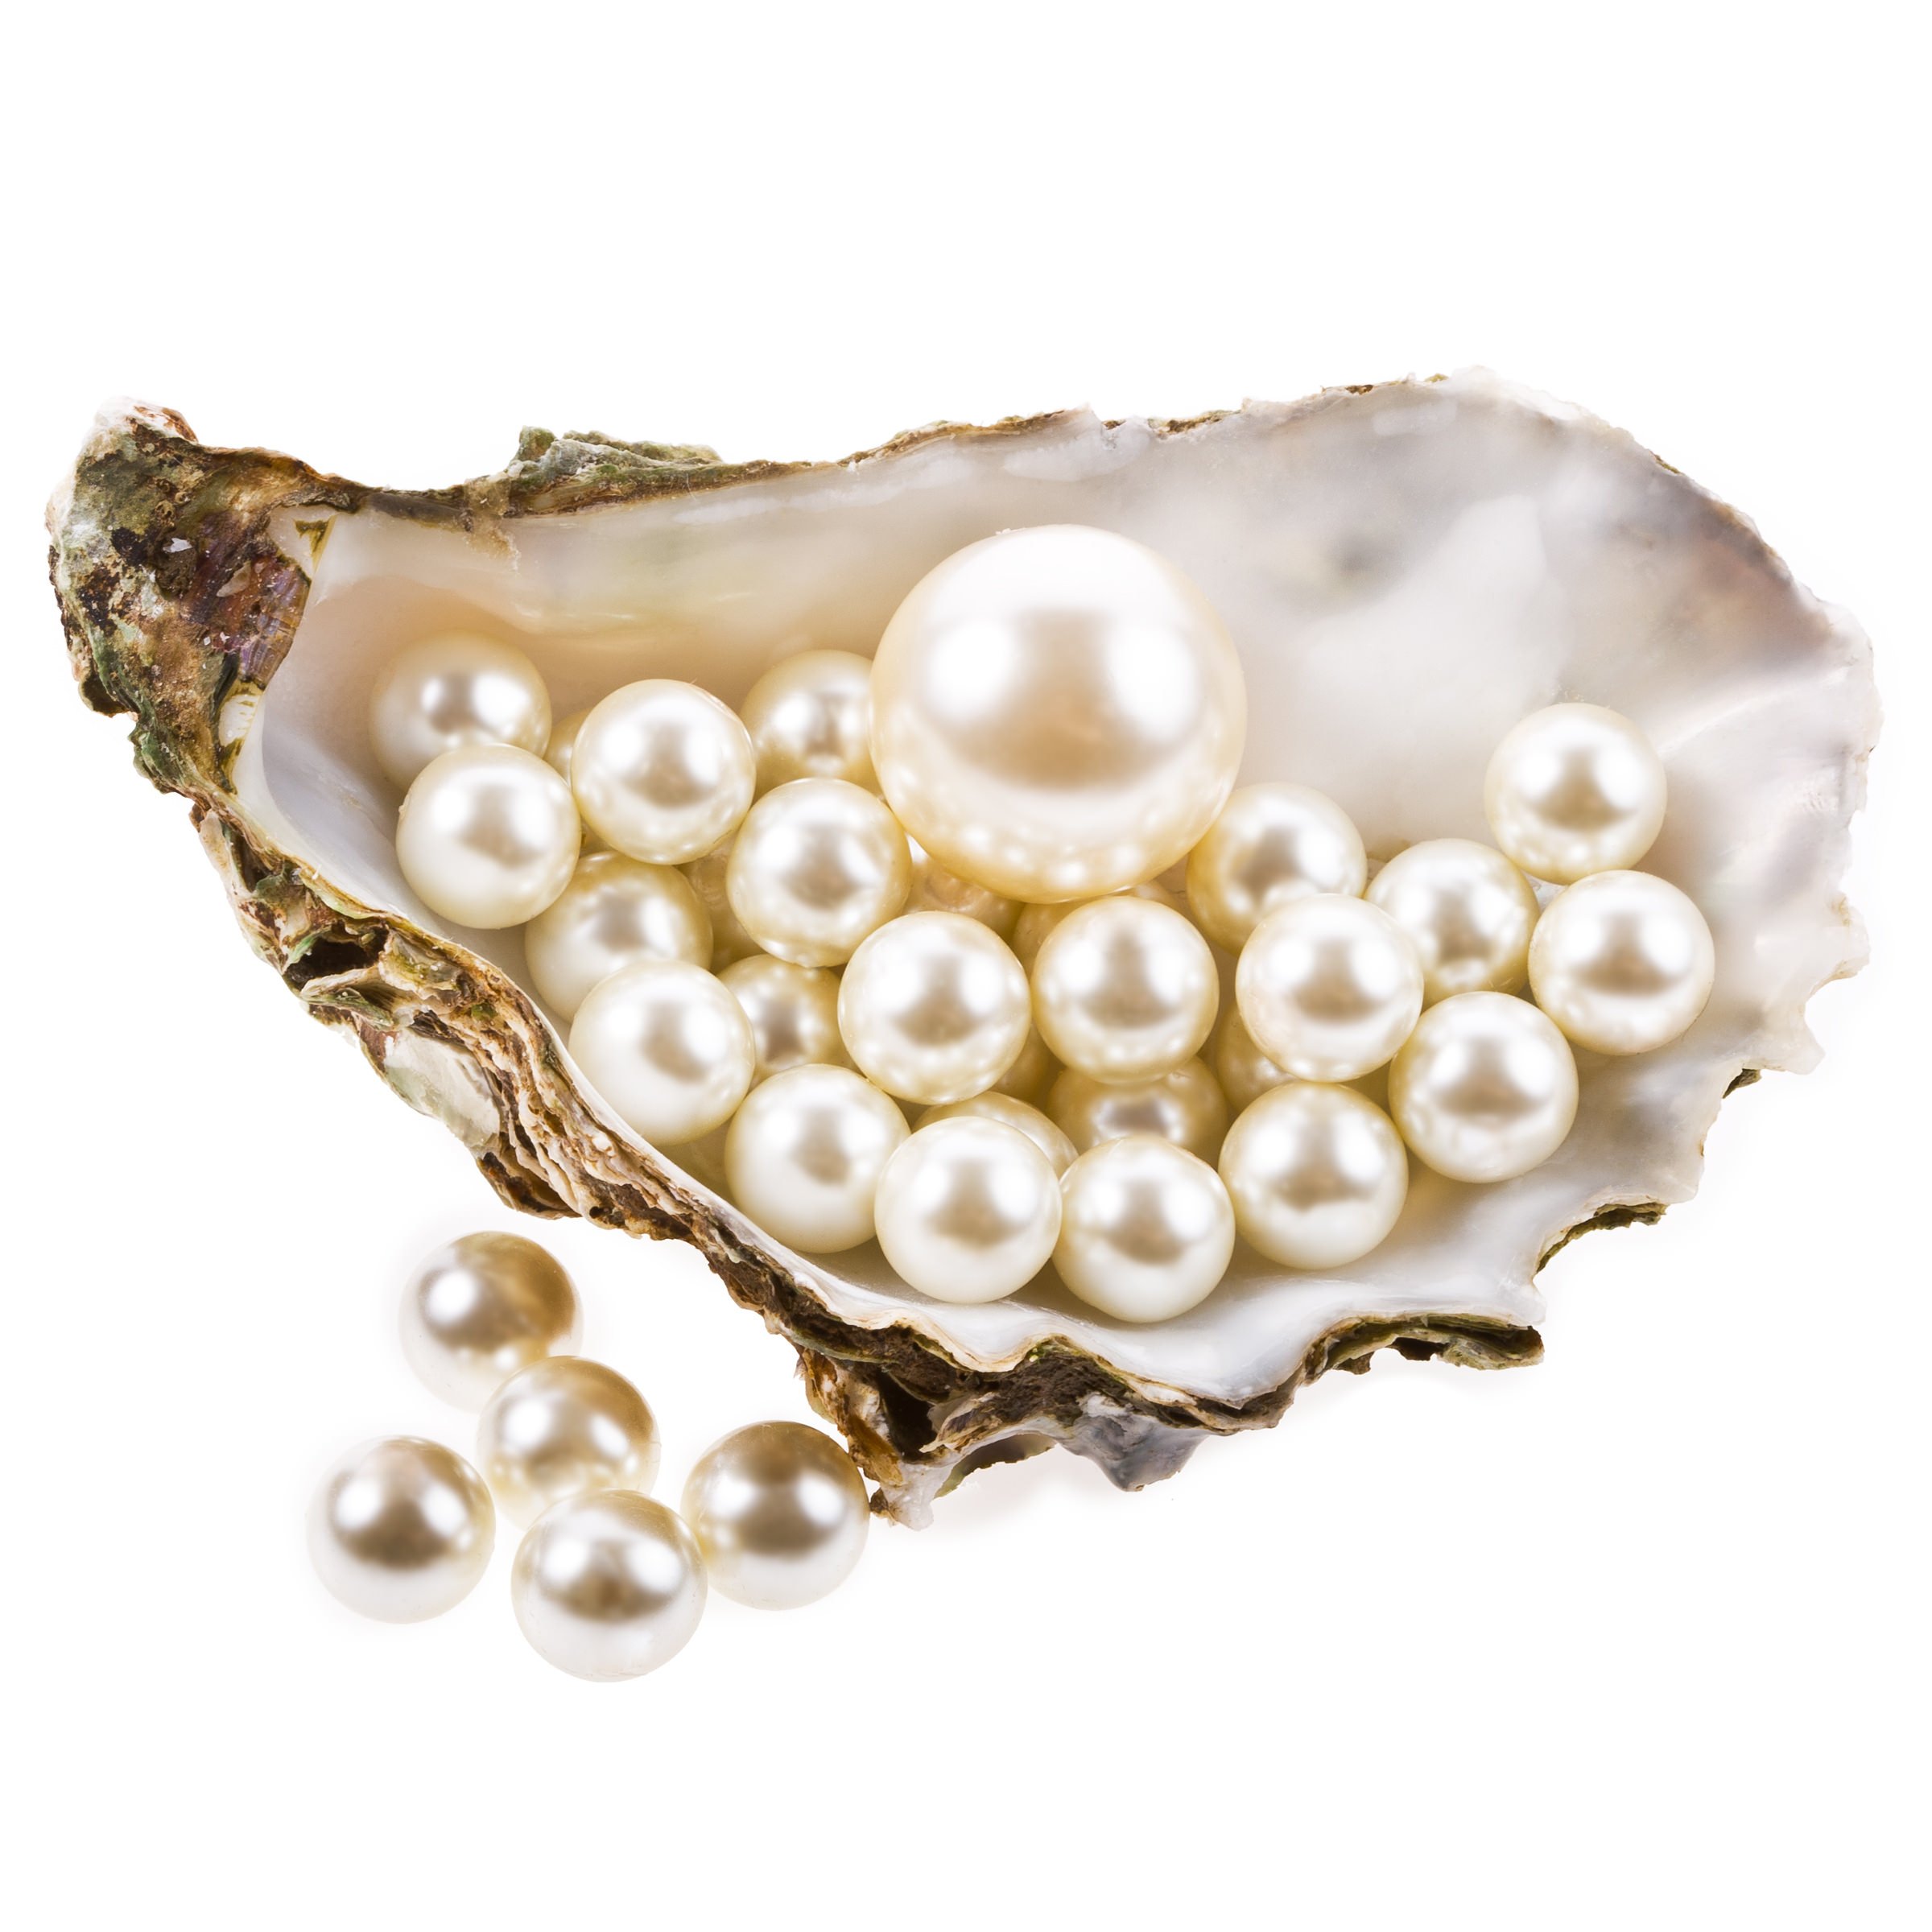 Pearls Images - KibrisPDR